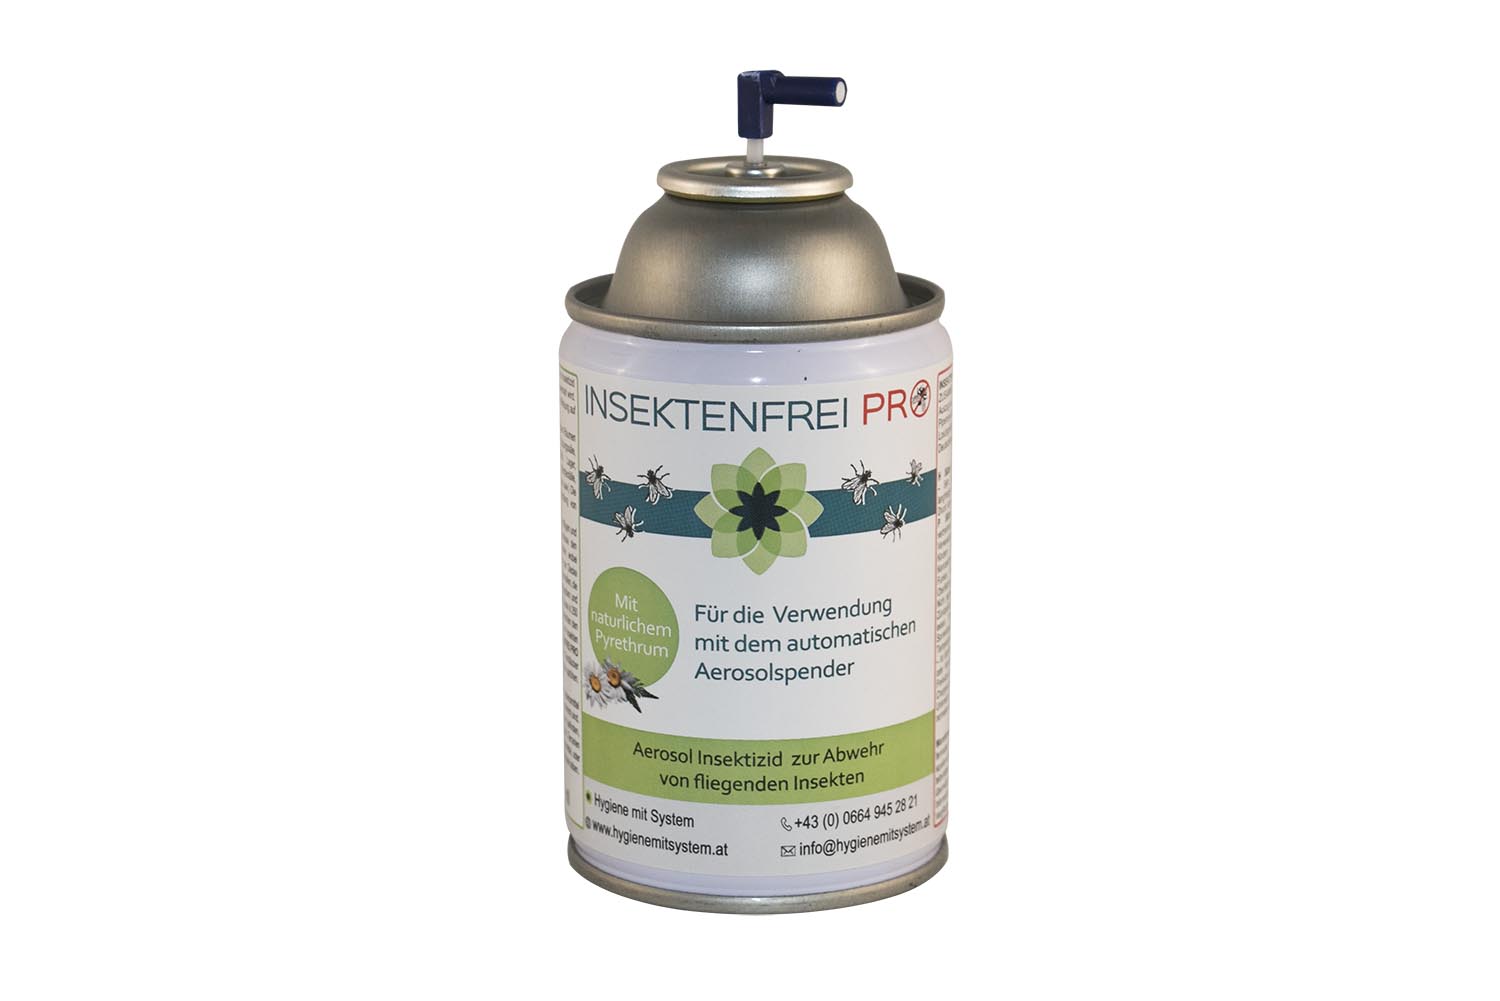 N.6 Zylinder Air CONTROL S Insektenvernichter Extrakt Pyrethrum Al 50% 